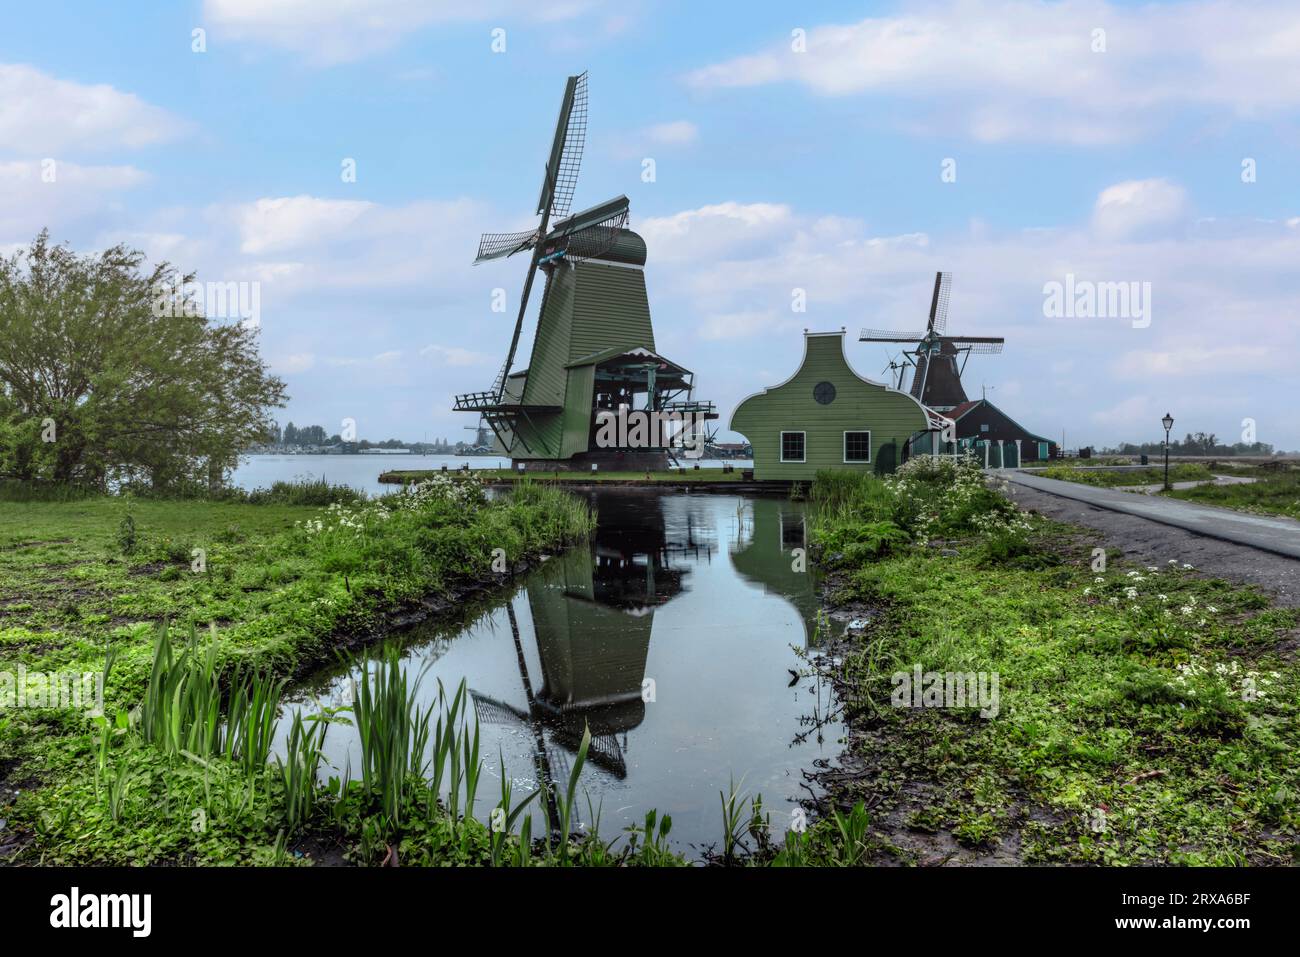 Tradizionale villaggio olandese di Zaanse Schans nell'Olanda settentrionale, Paesi Bassi Foto Stock